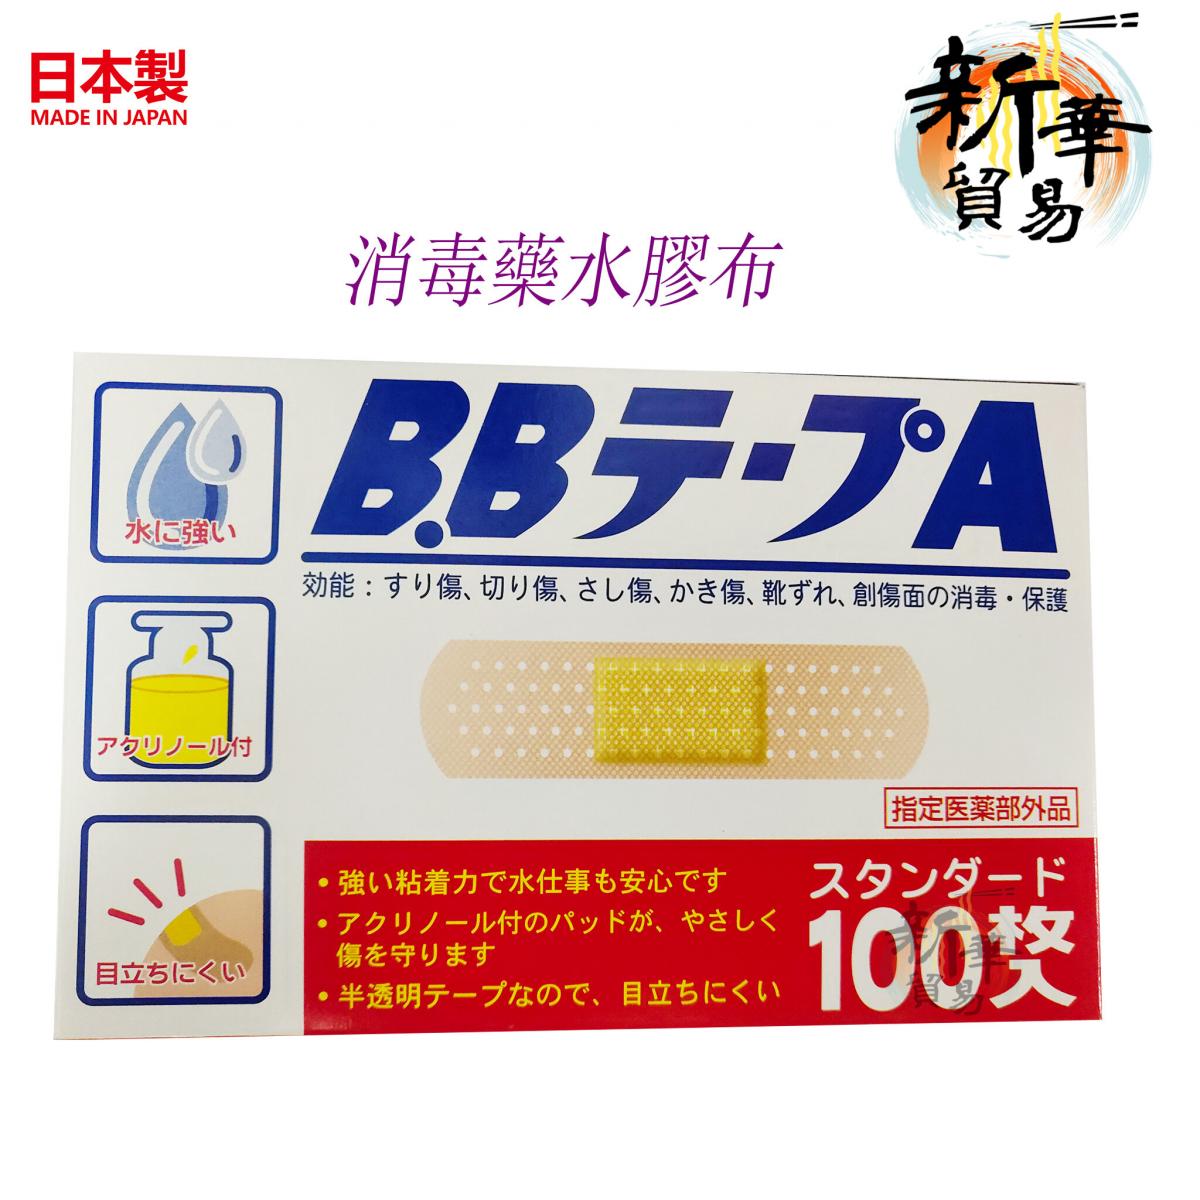 Japan KANEISHIDisinfectant band-aids 100pcs（M 19mm-72mm）(parallel import goods)